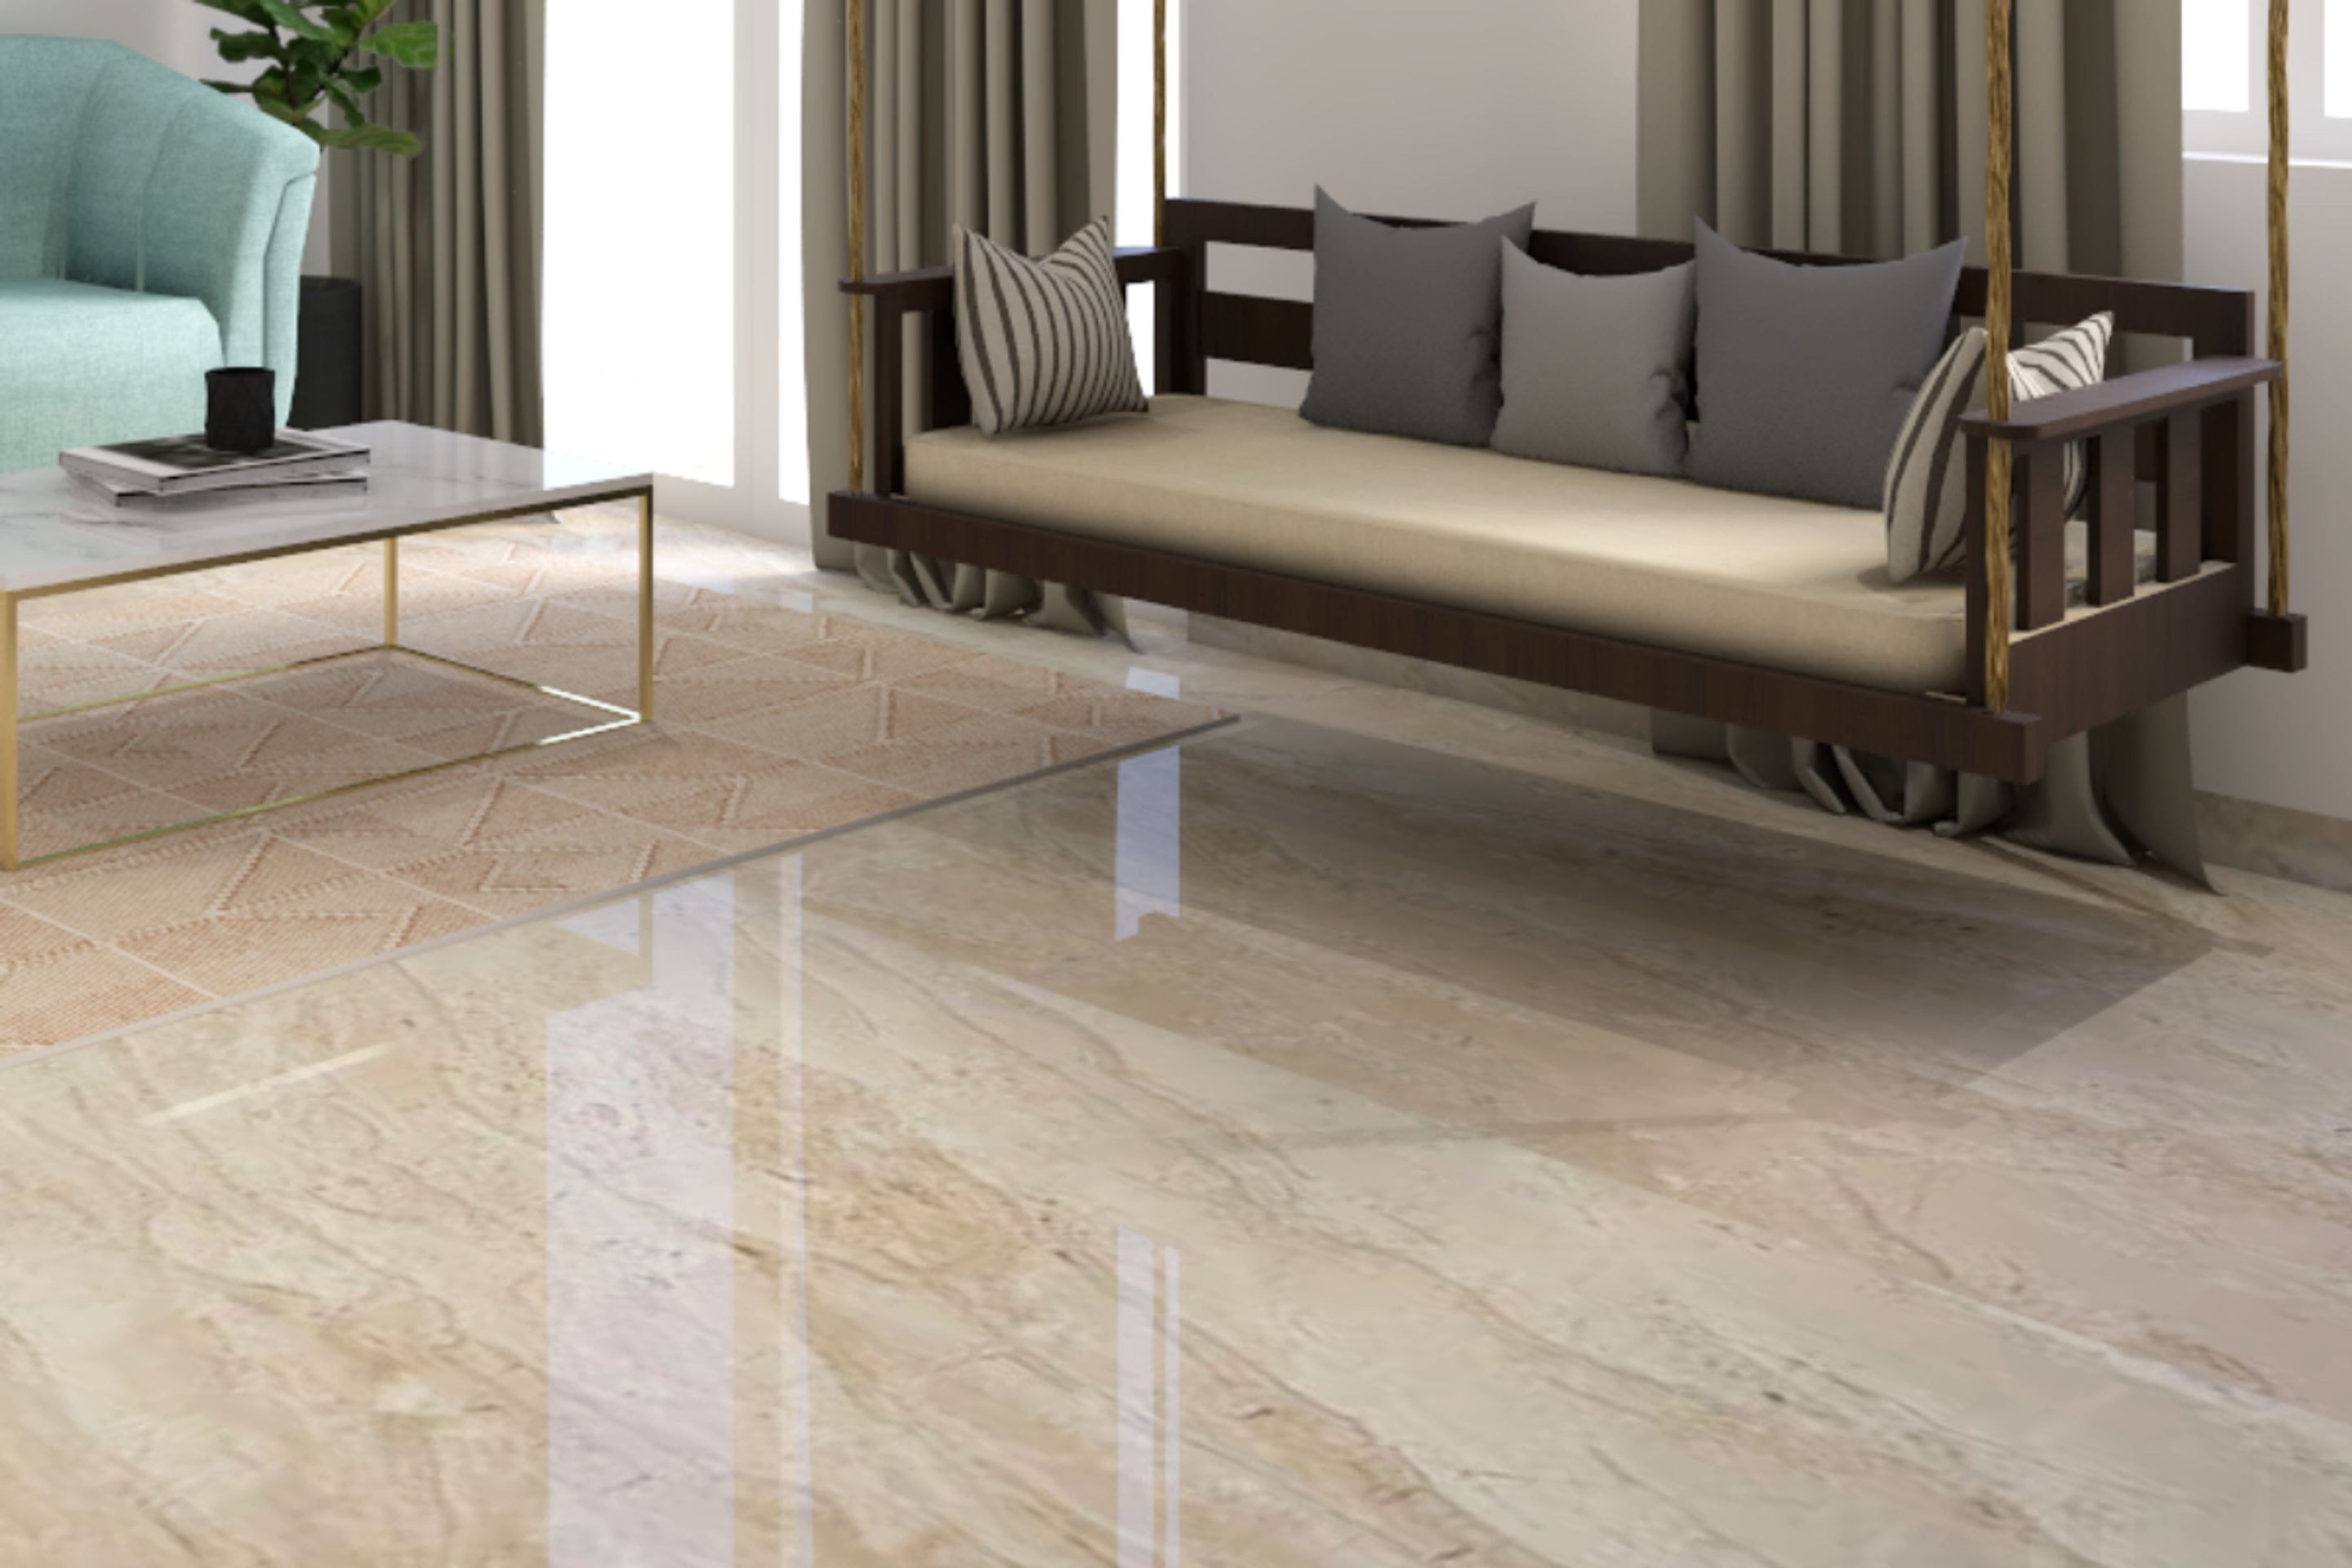 living room floor tiles design india